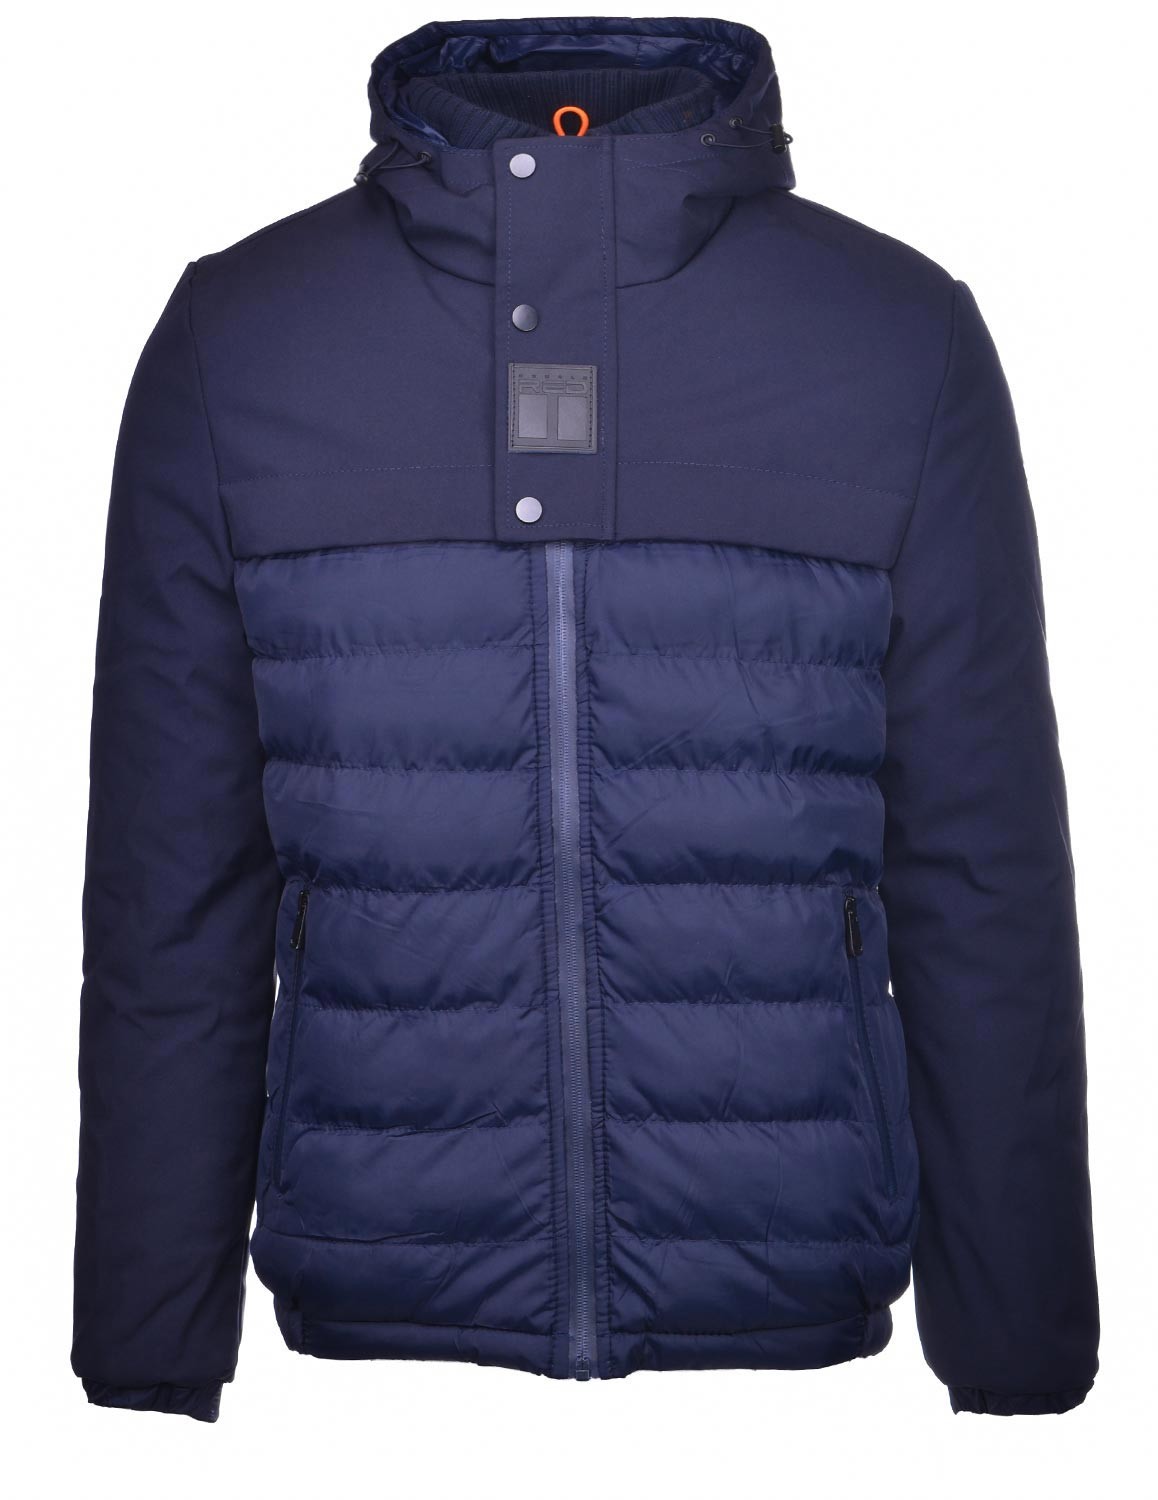 ASPEN Winter Jacket Dark Blue